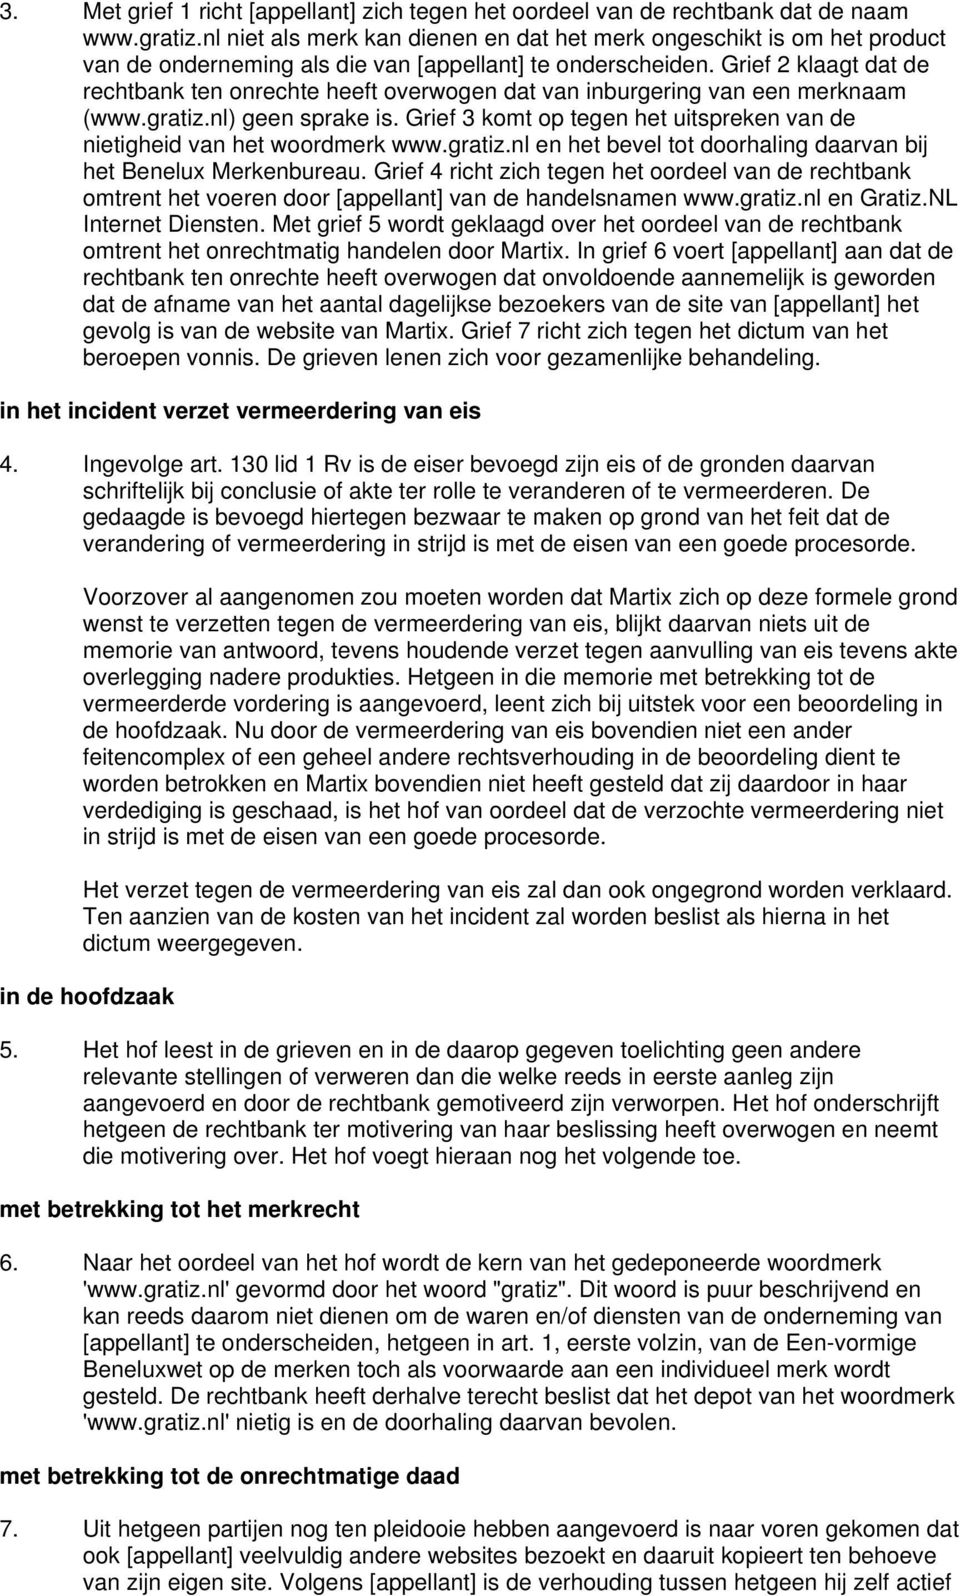 Grief 2 klaagt dat de rechtbank ten onrechte heeft overwogen dat van inburgering van een merknaam (www.gratiz.nl) geen sprake is.